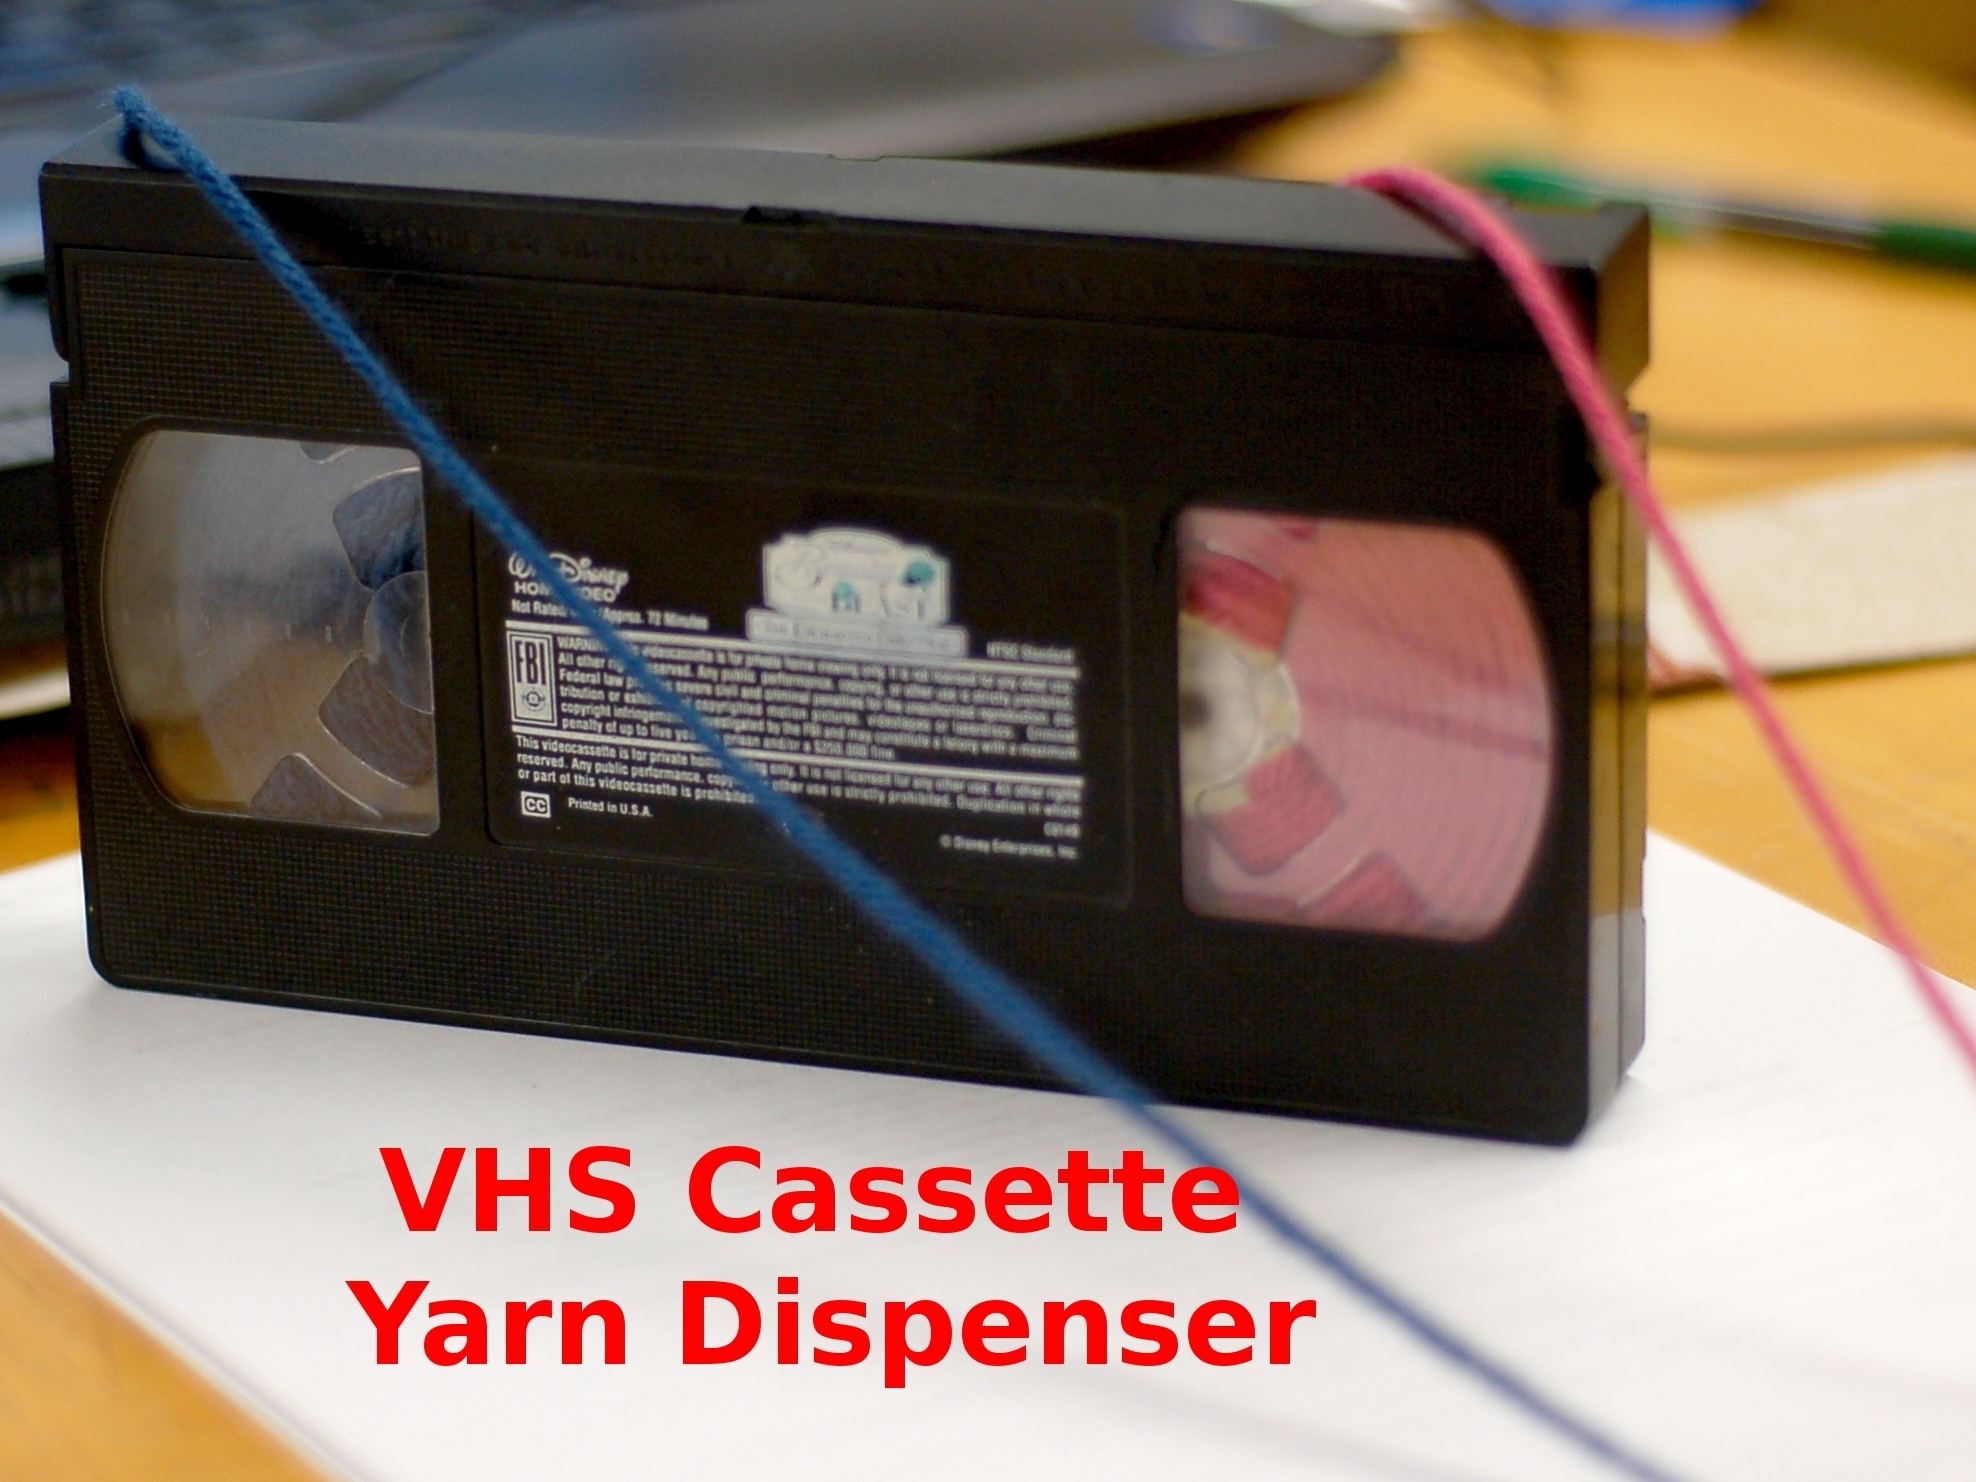 VHS Cassette Yarn Dispenser!